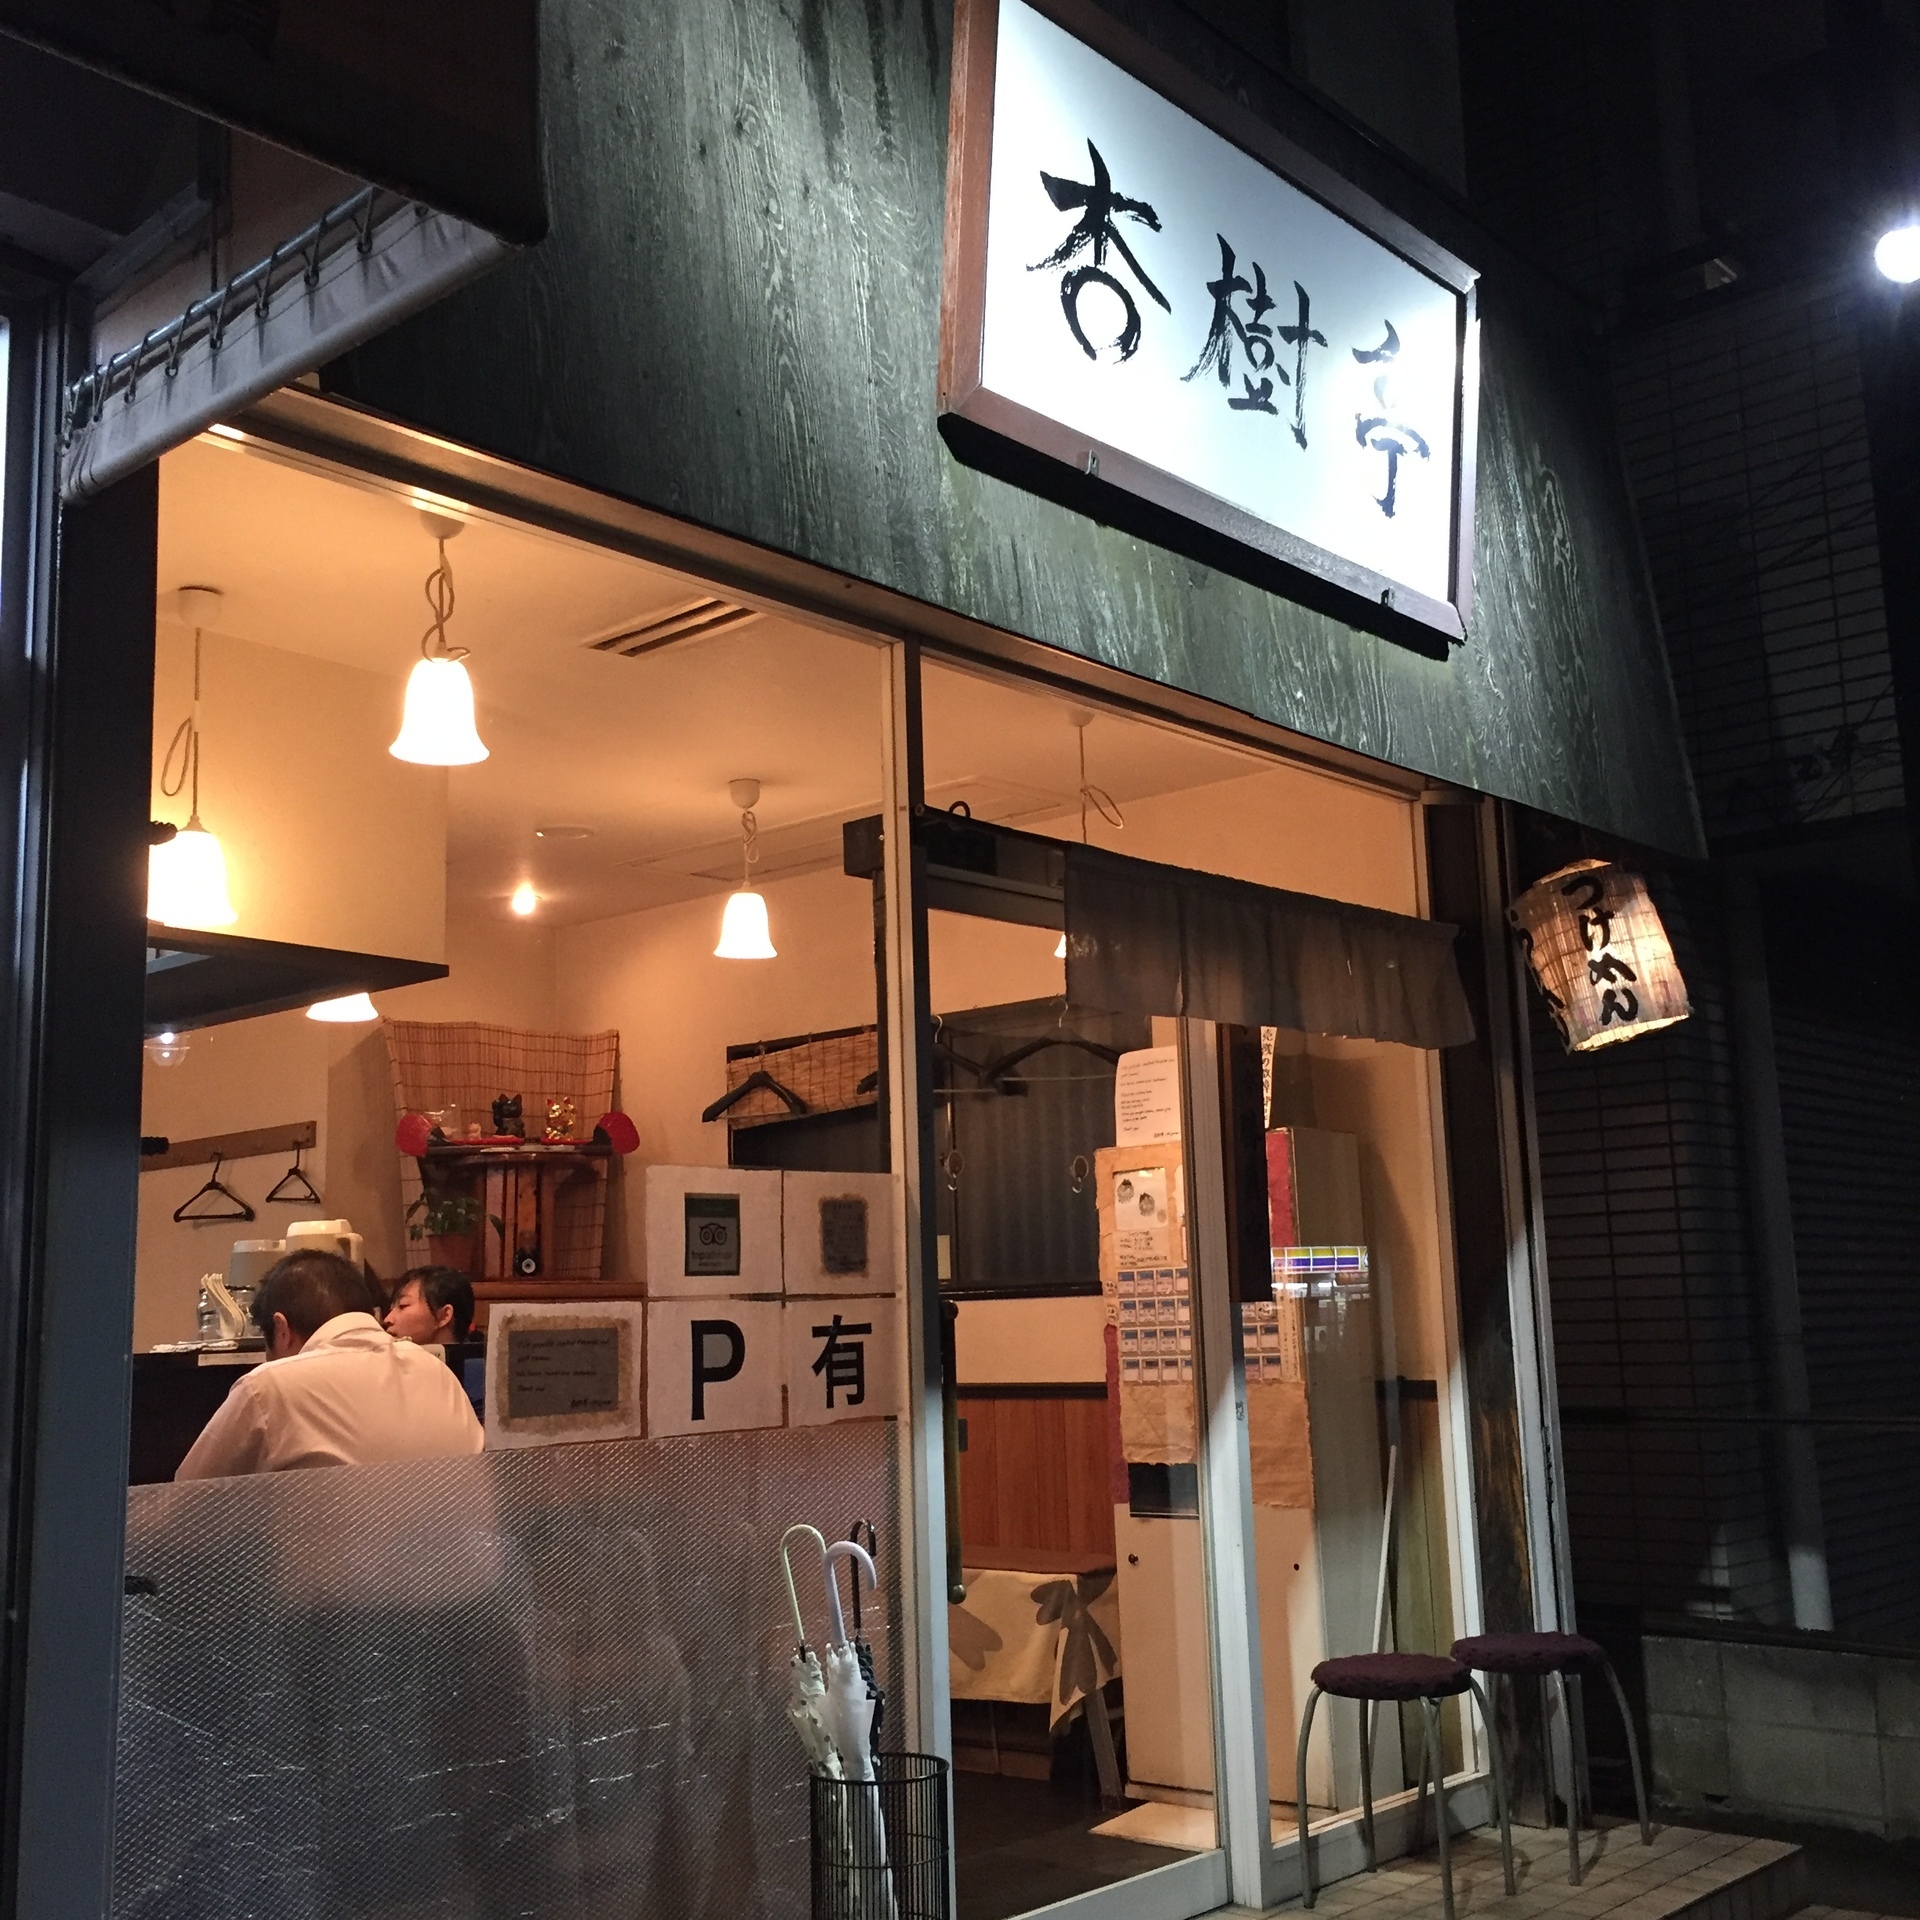 妙典 杏樹亭 妙典にある隠れた人気店 つけ麺がうまい 浦安グルメマップ うまい飯食べ歩き日記